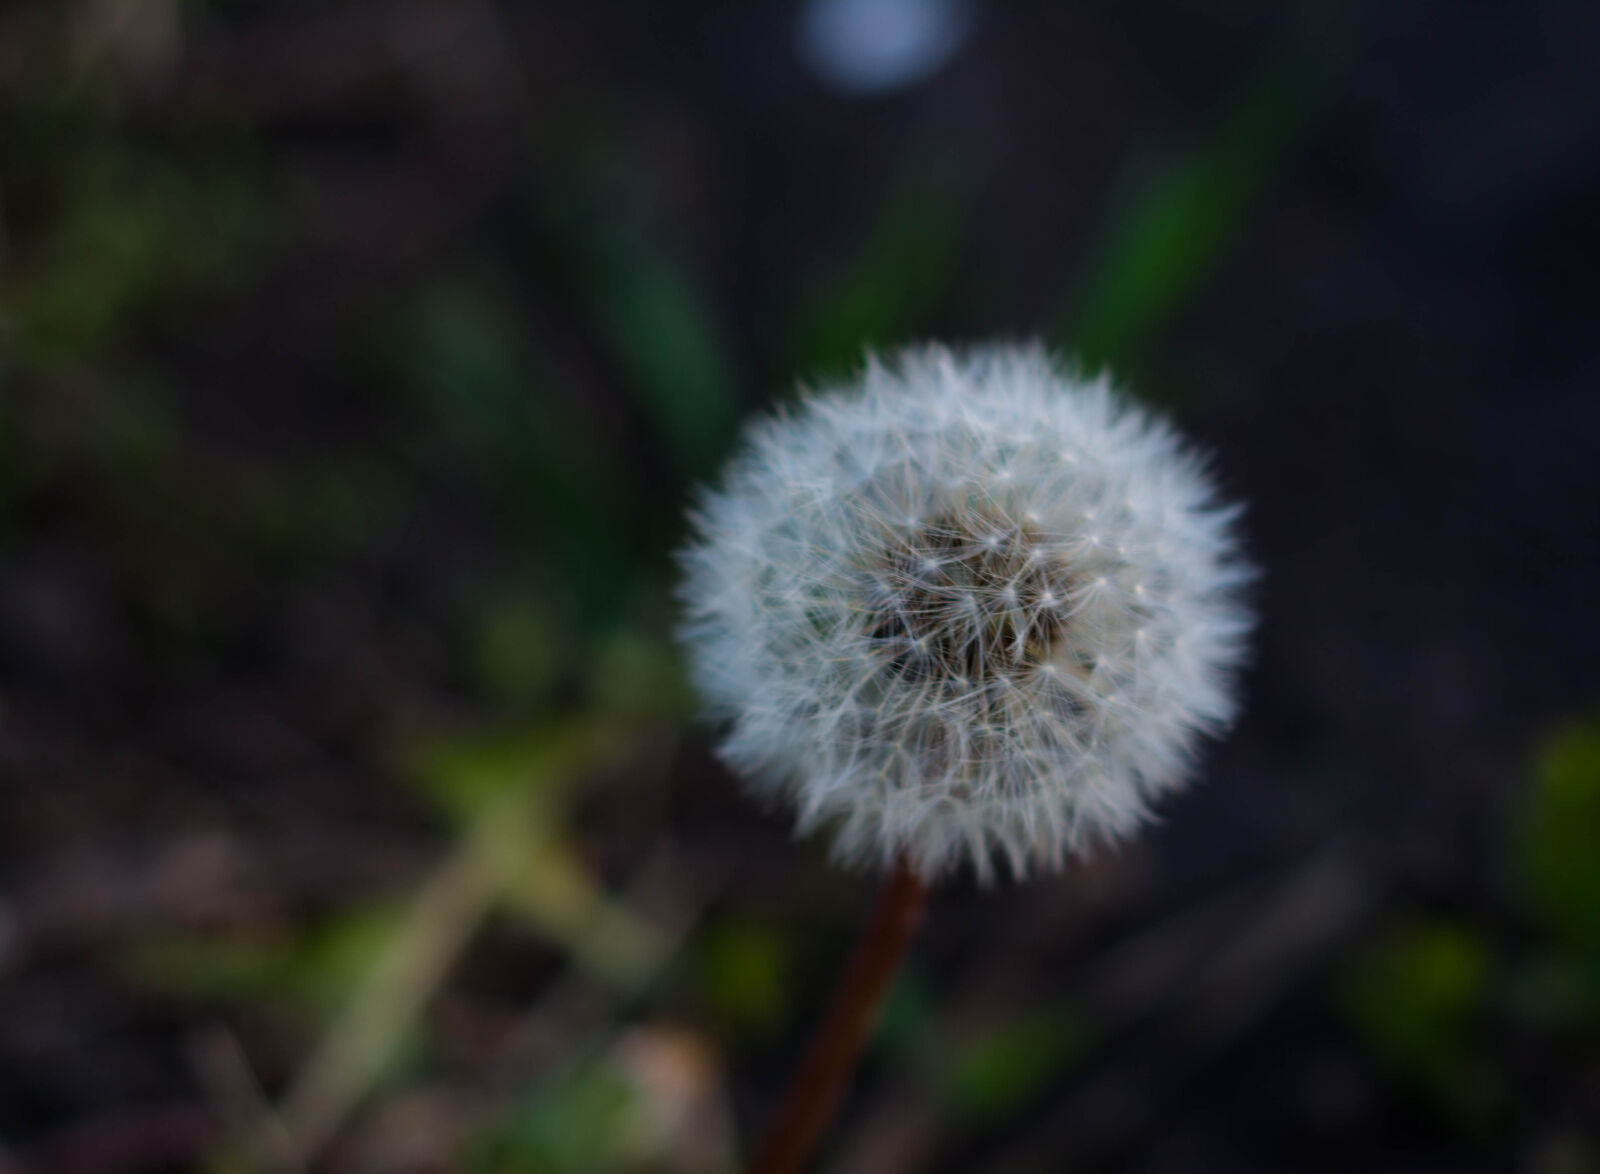 Nikon AF Nikkor 50mm F1.8D sample photo. Blowball, dandelion, flower, green photography